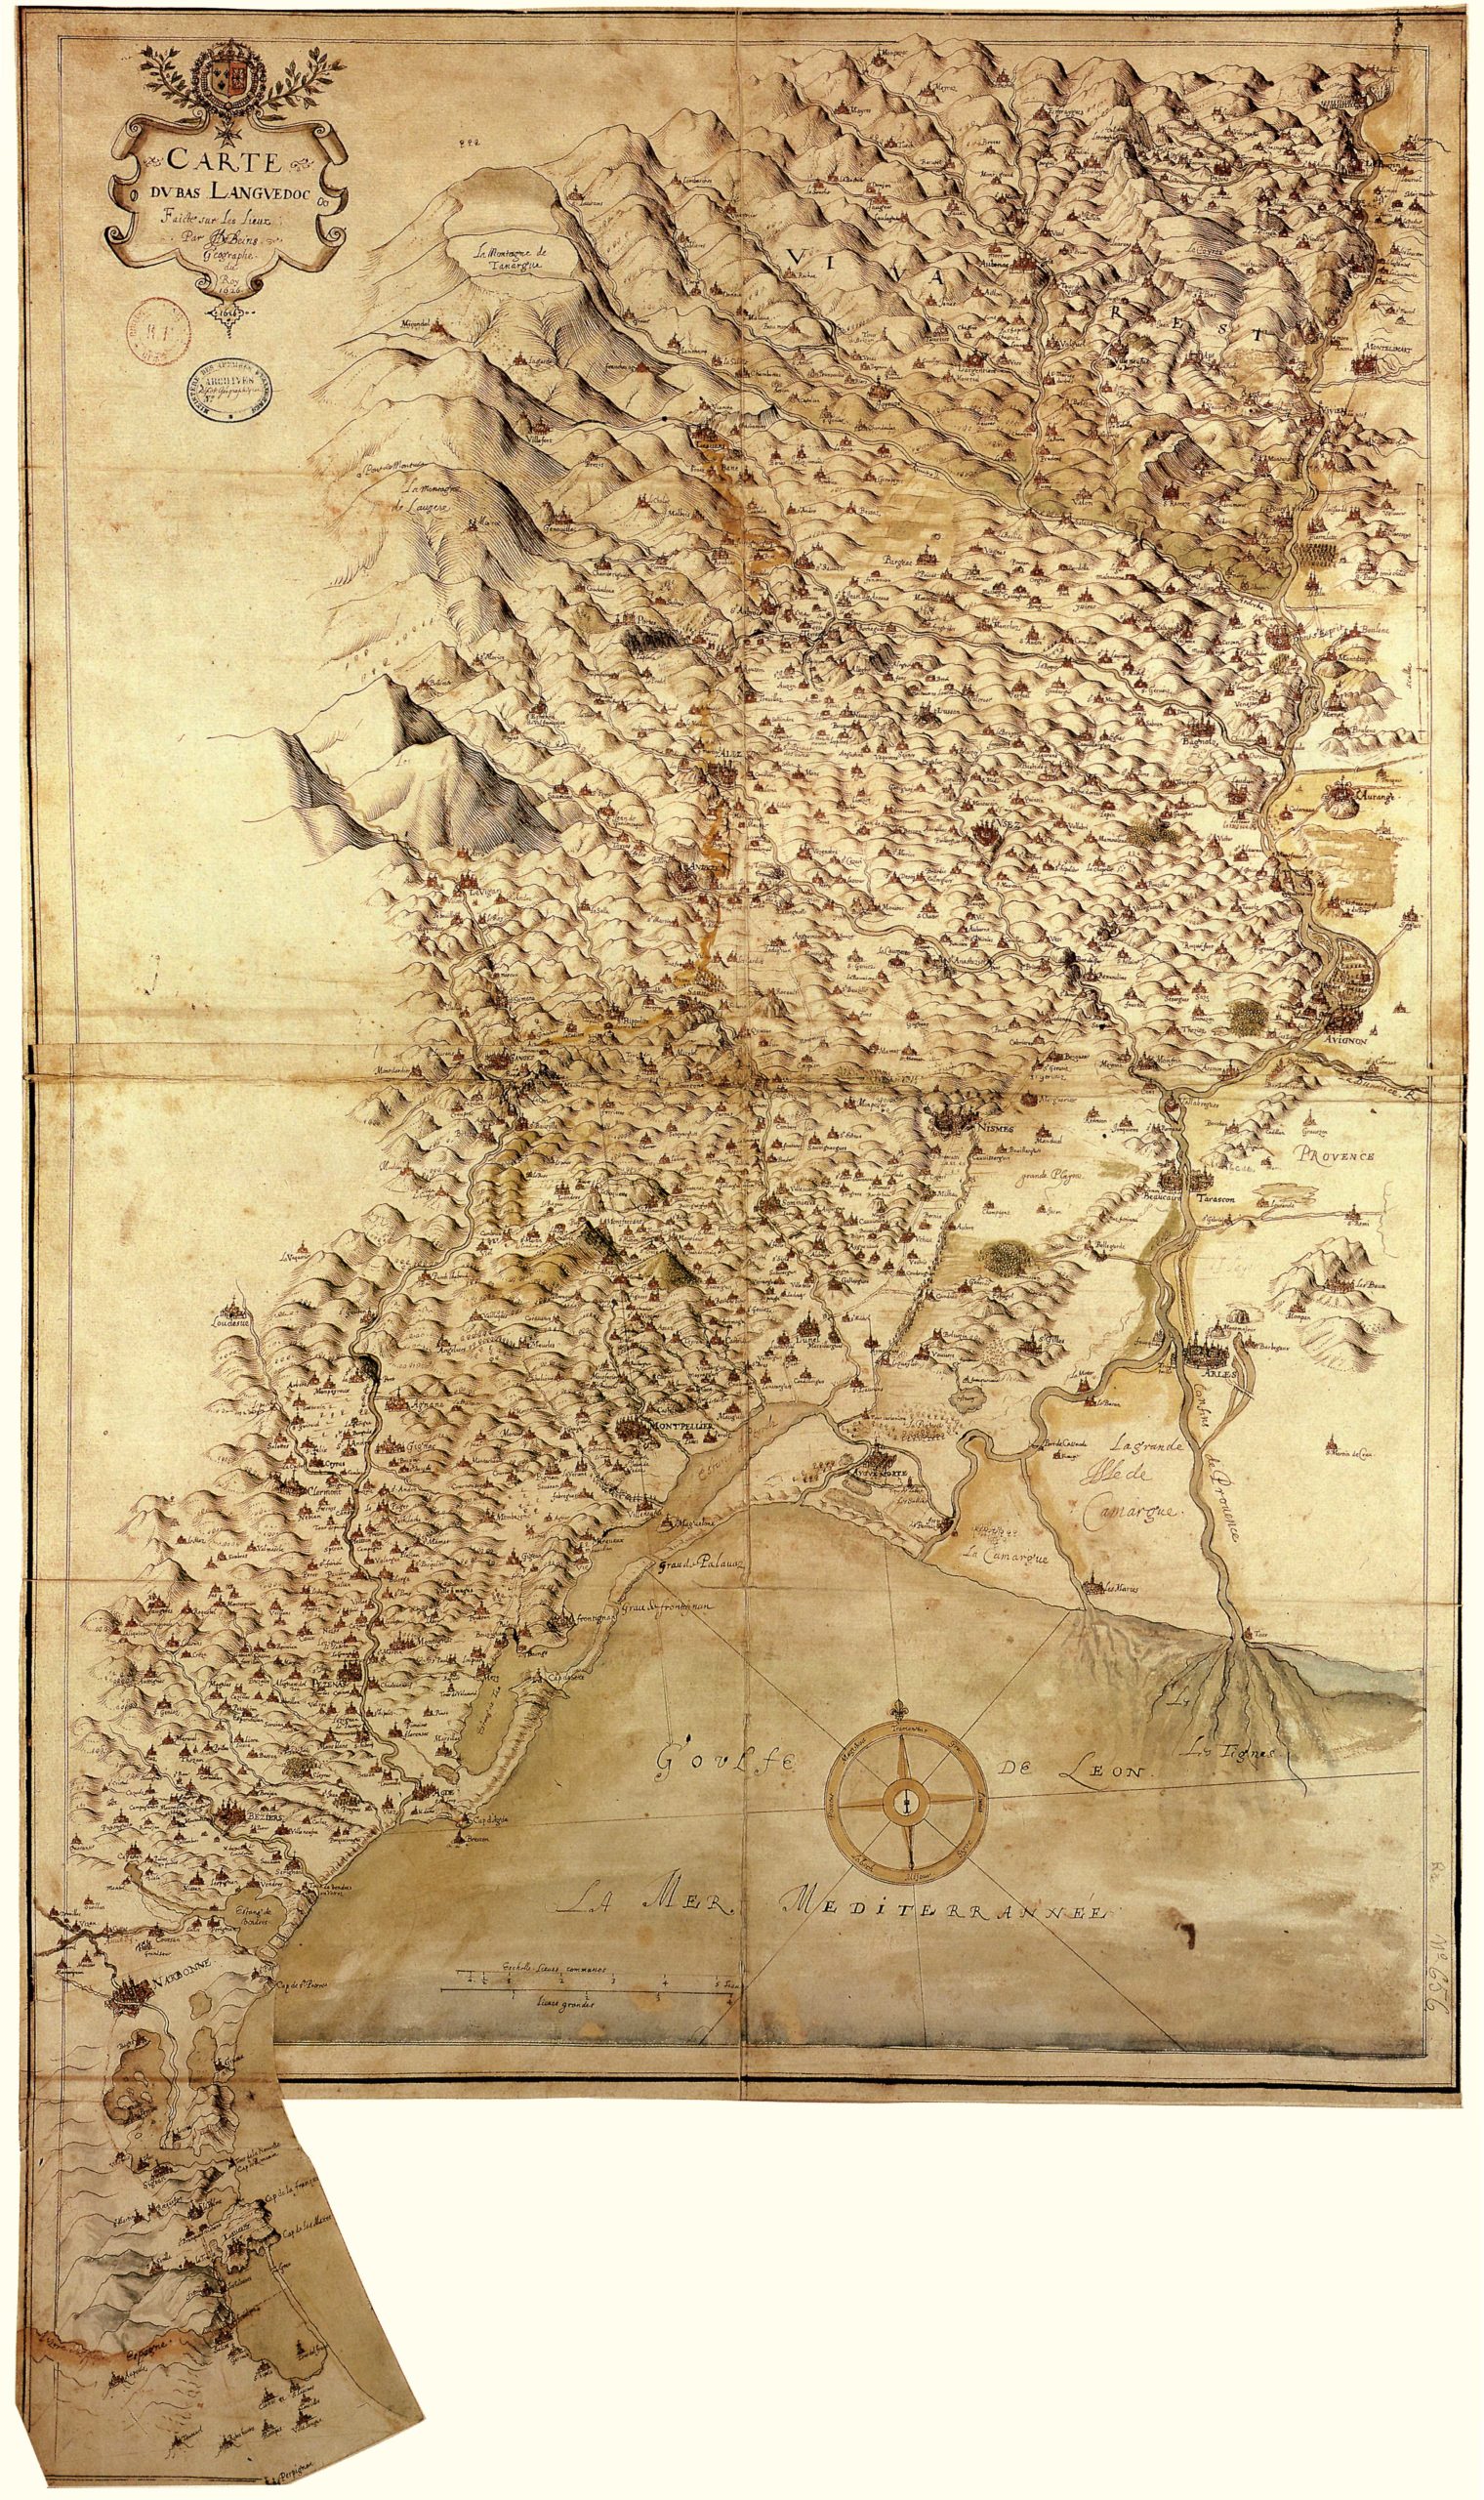 La carte du Bas Languedoc de J. de Bens, - 1626